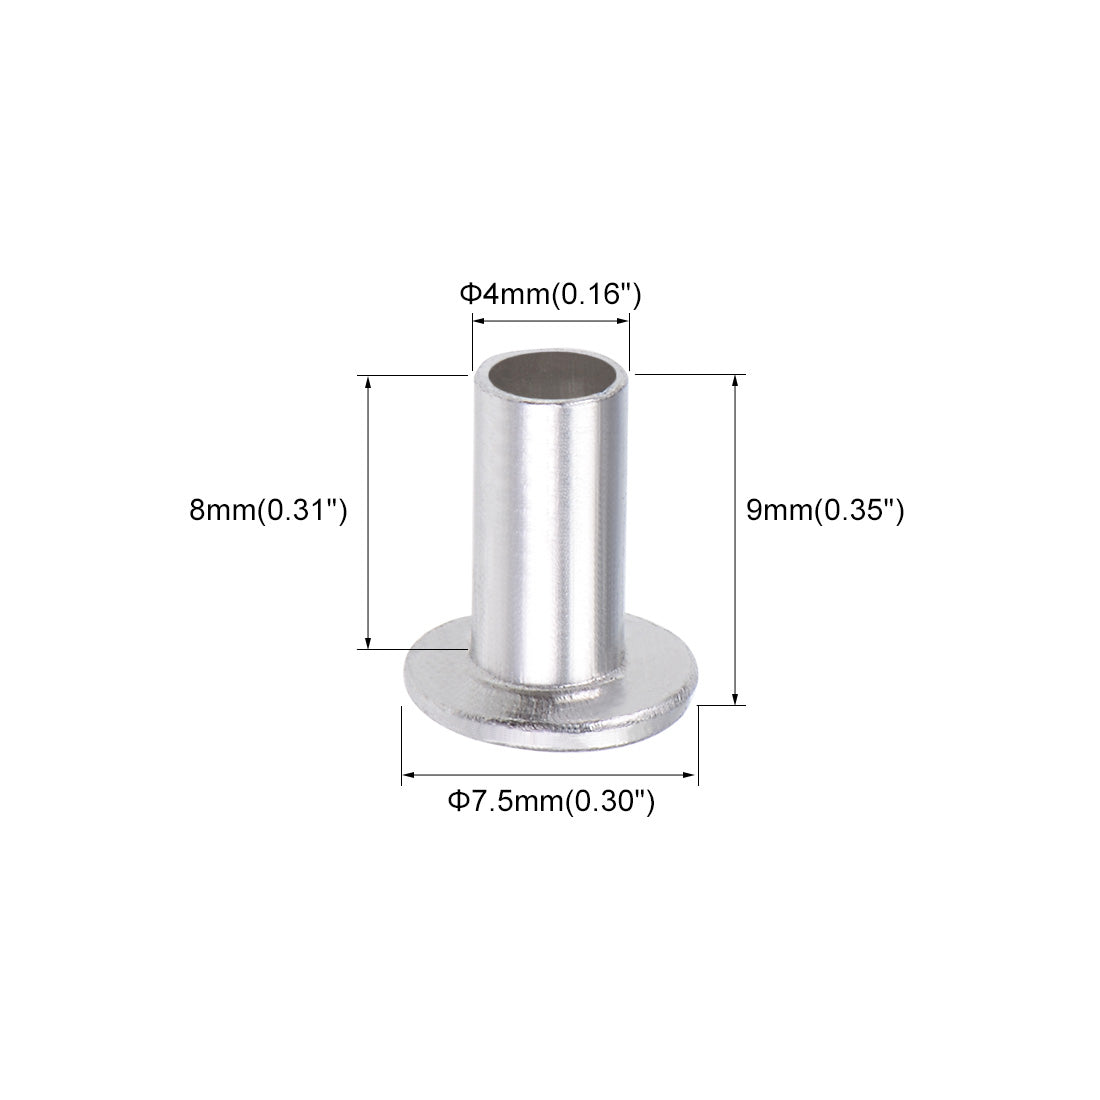 uxcell Uxcell 200 Pcs 4mm x 8mm Aluminum Flat Head Semi-Tubular Rivets Silver Tone